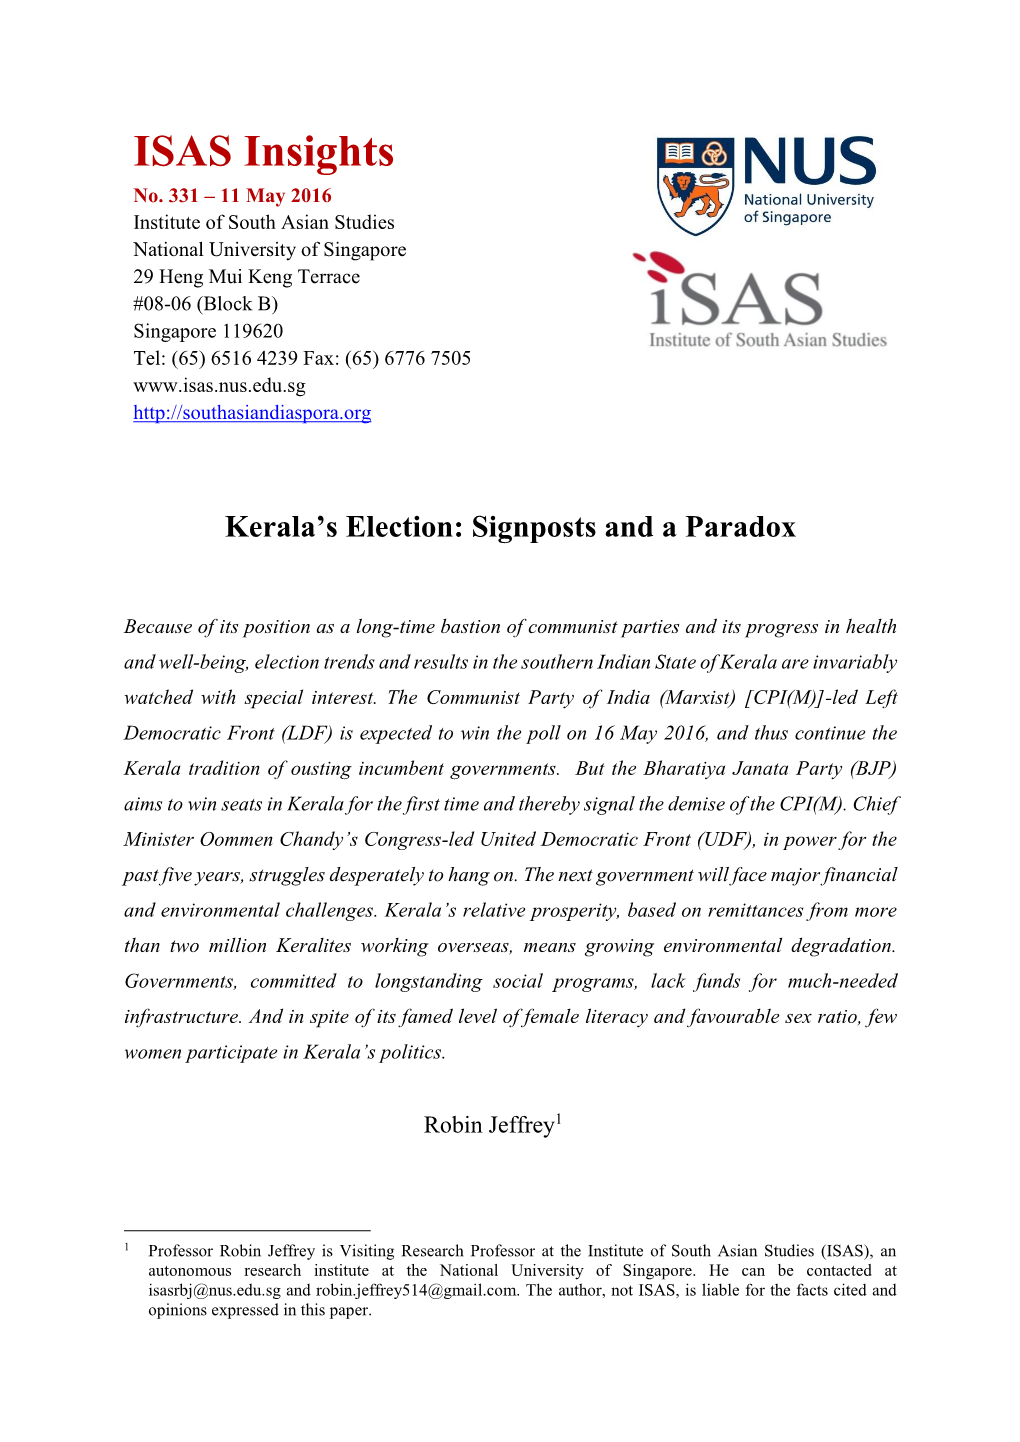 Kerala's Election